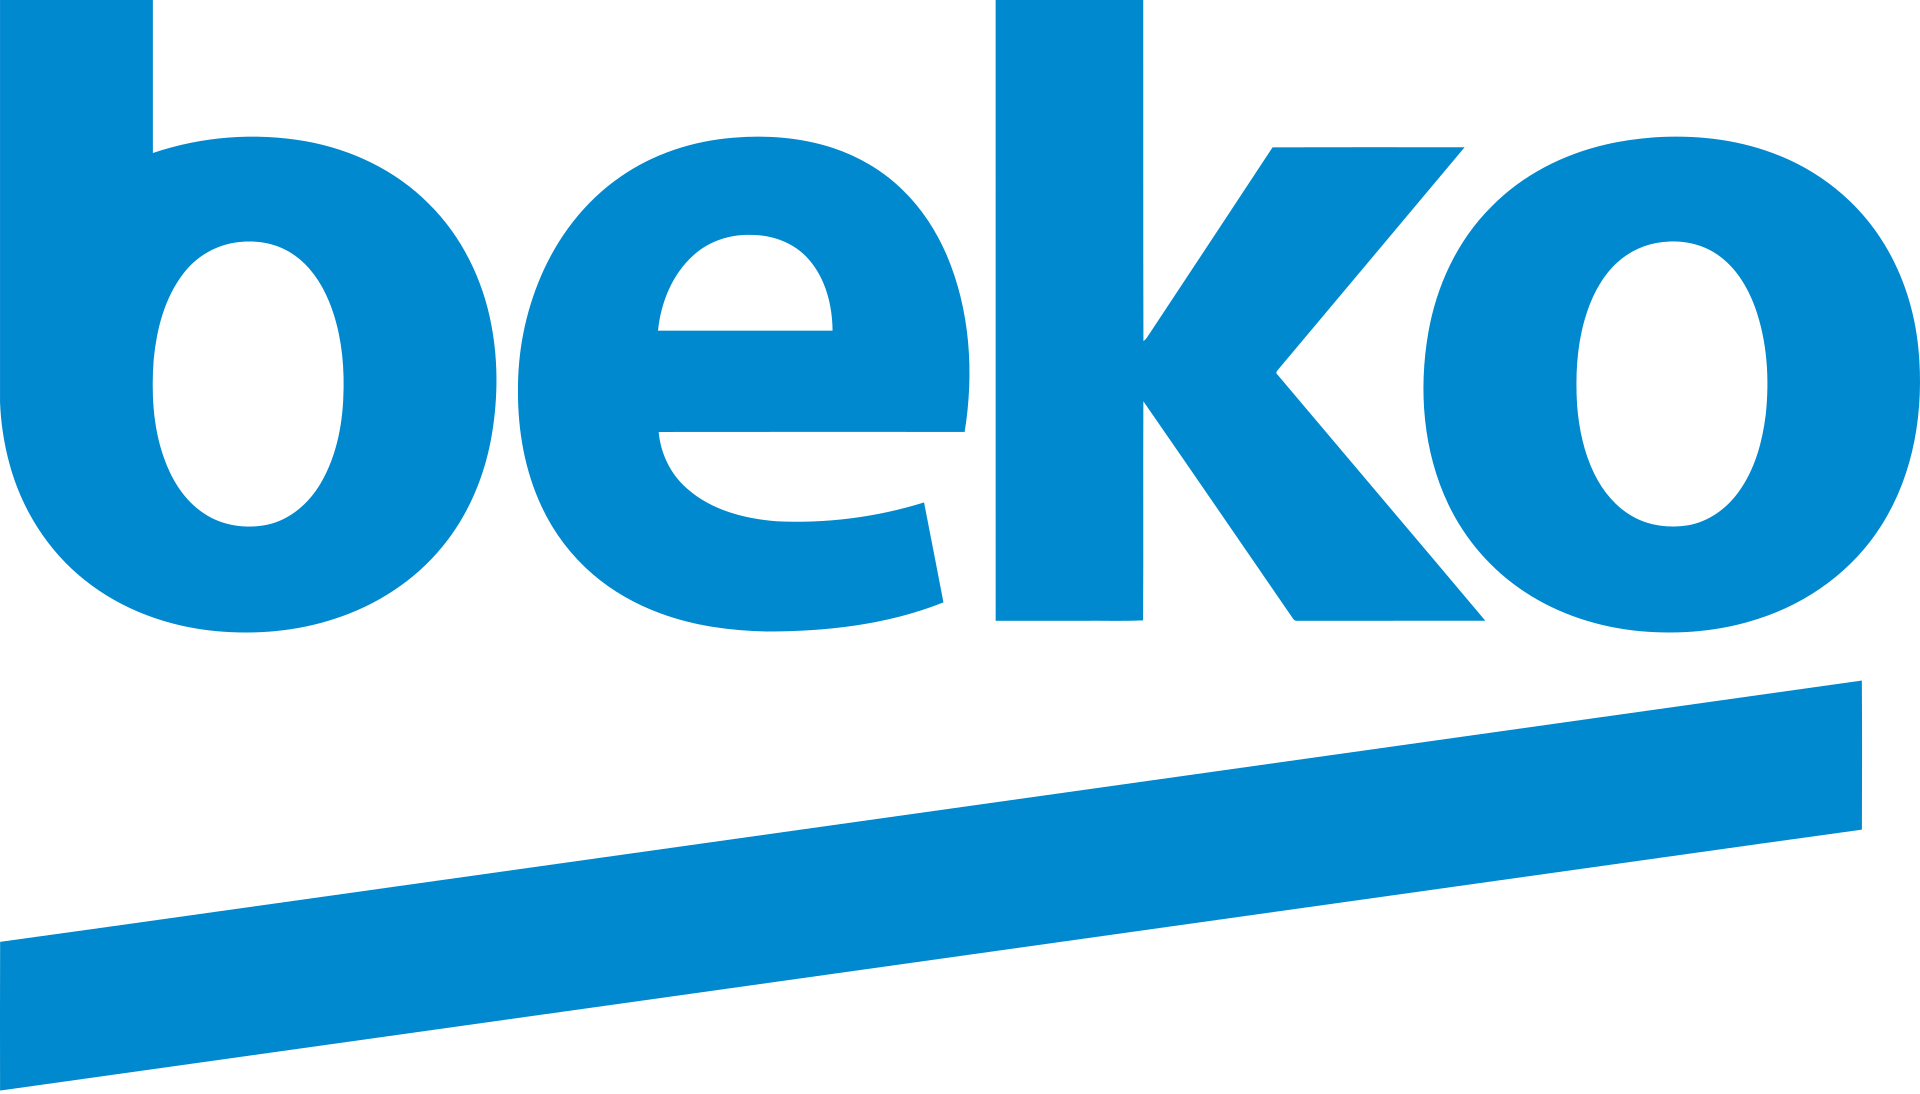 Beko_logo